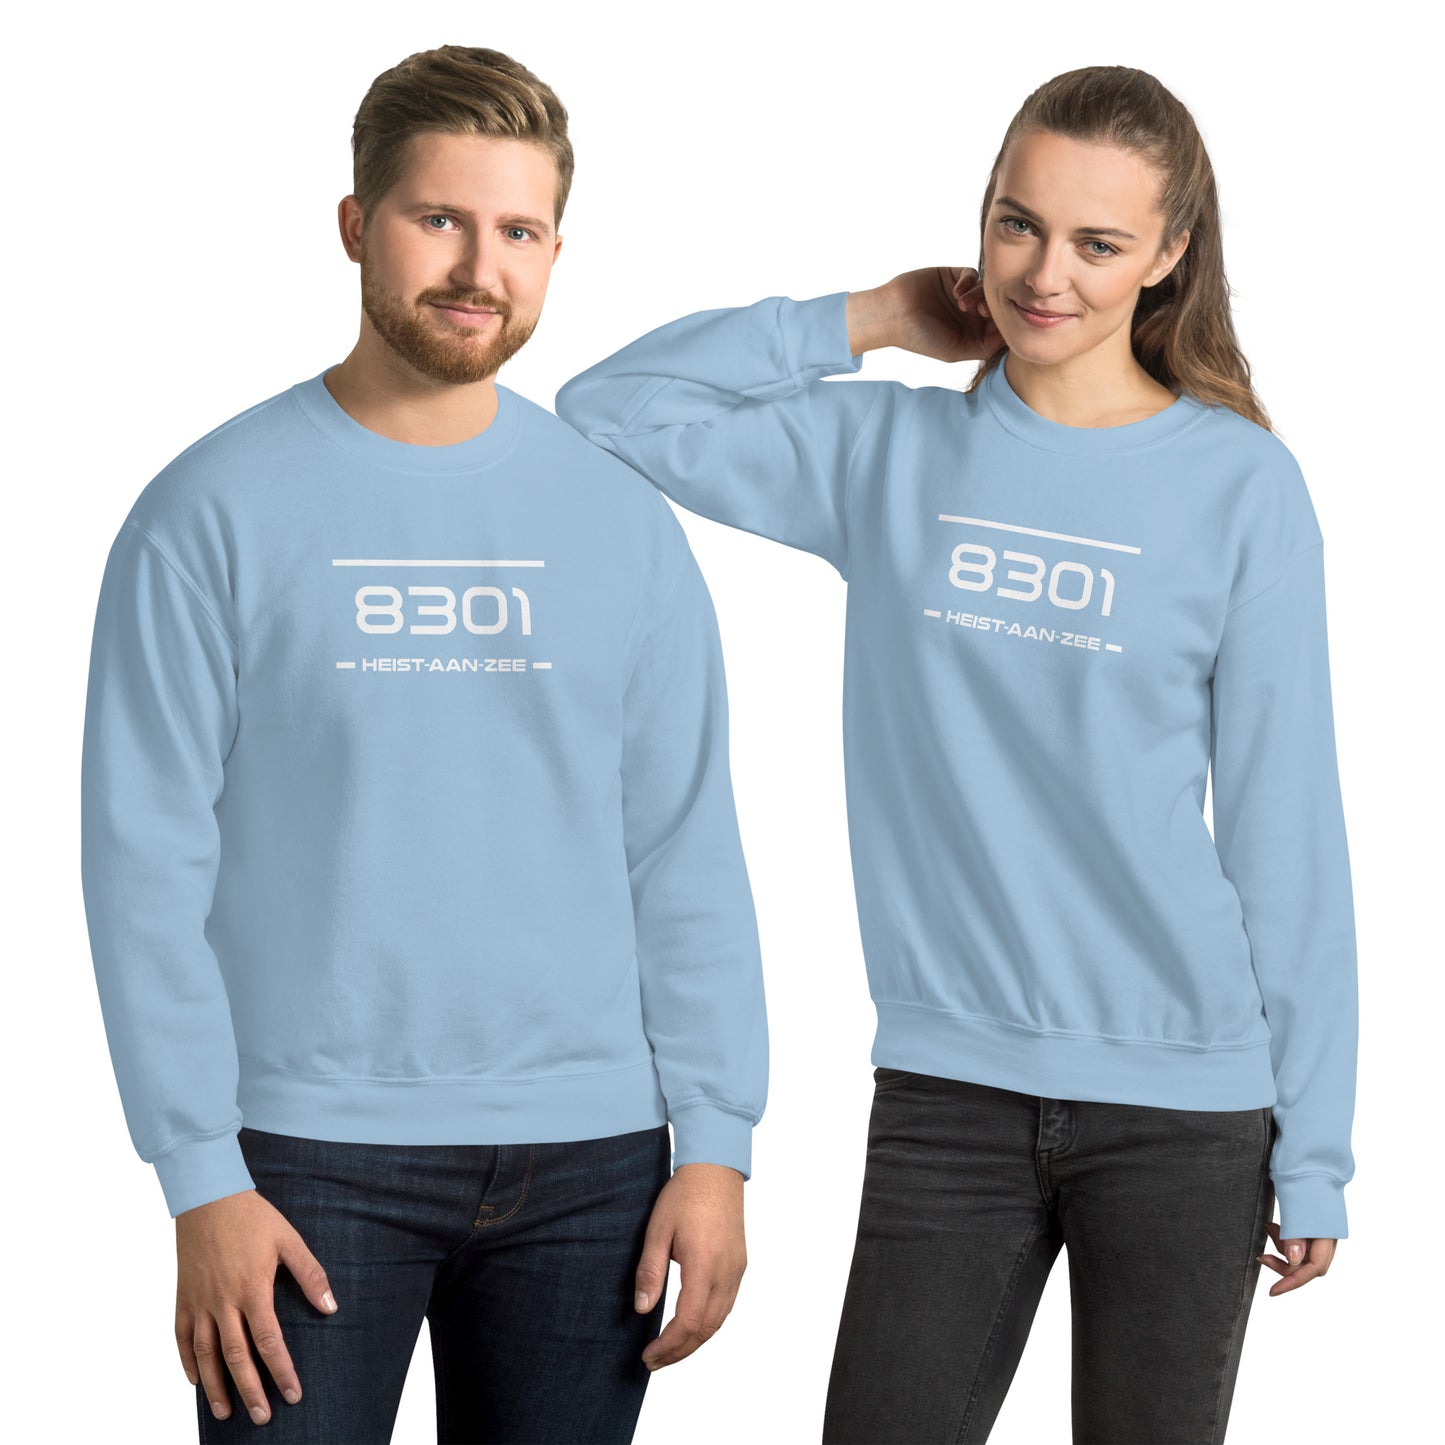 Sweater - 8301 - Heist-Aan-Zee (M/V)